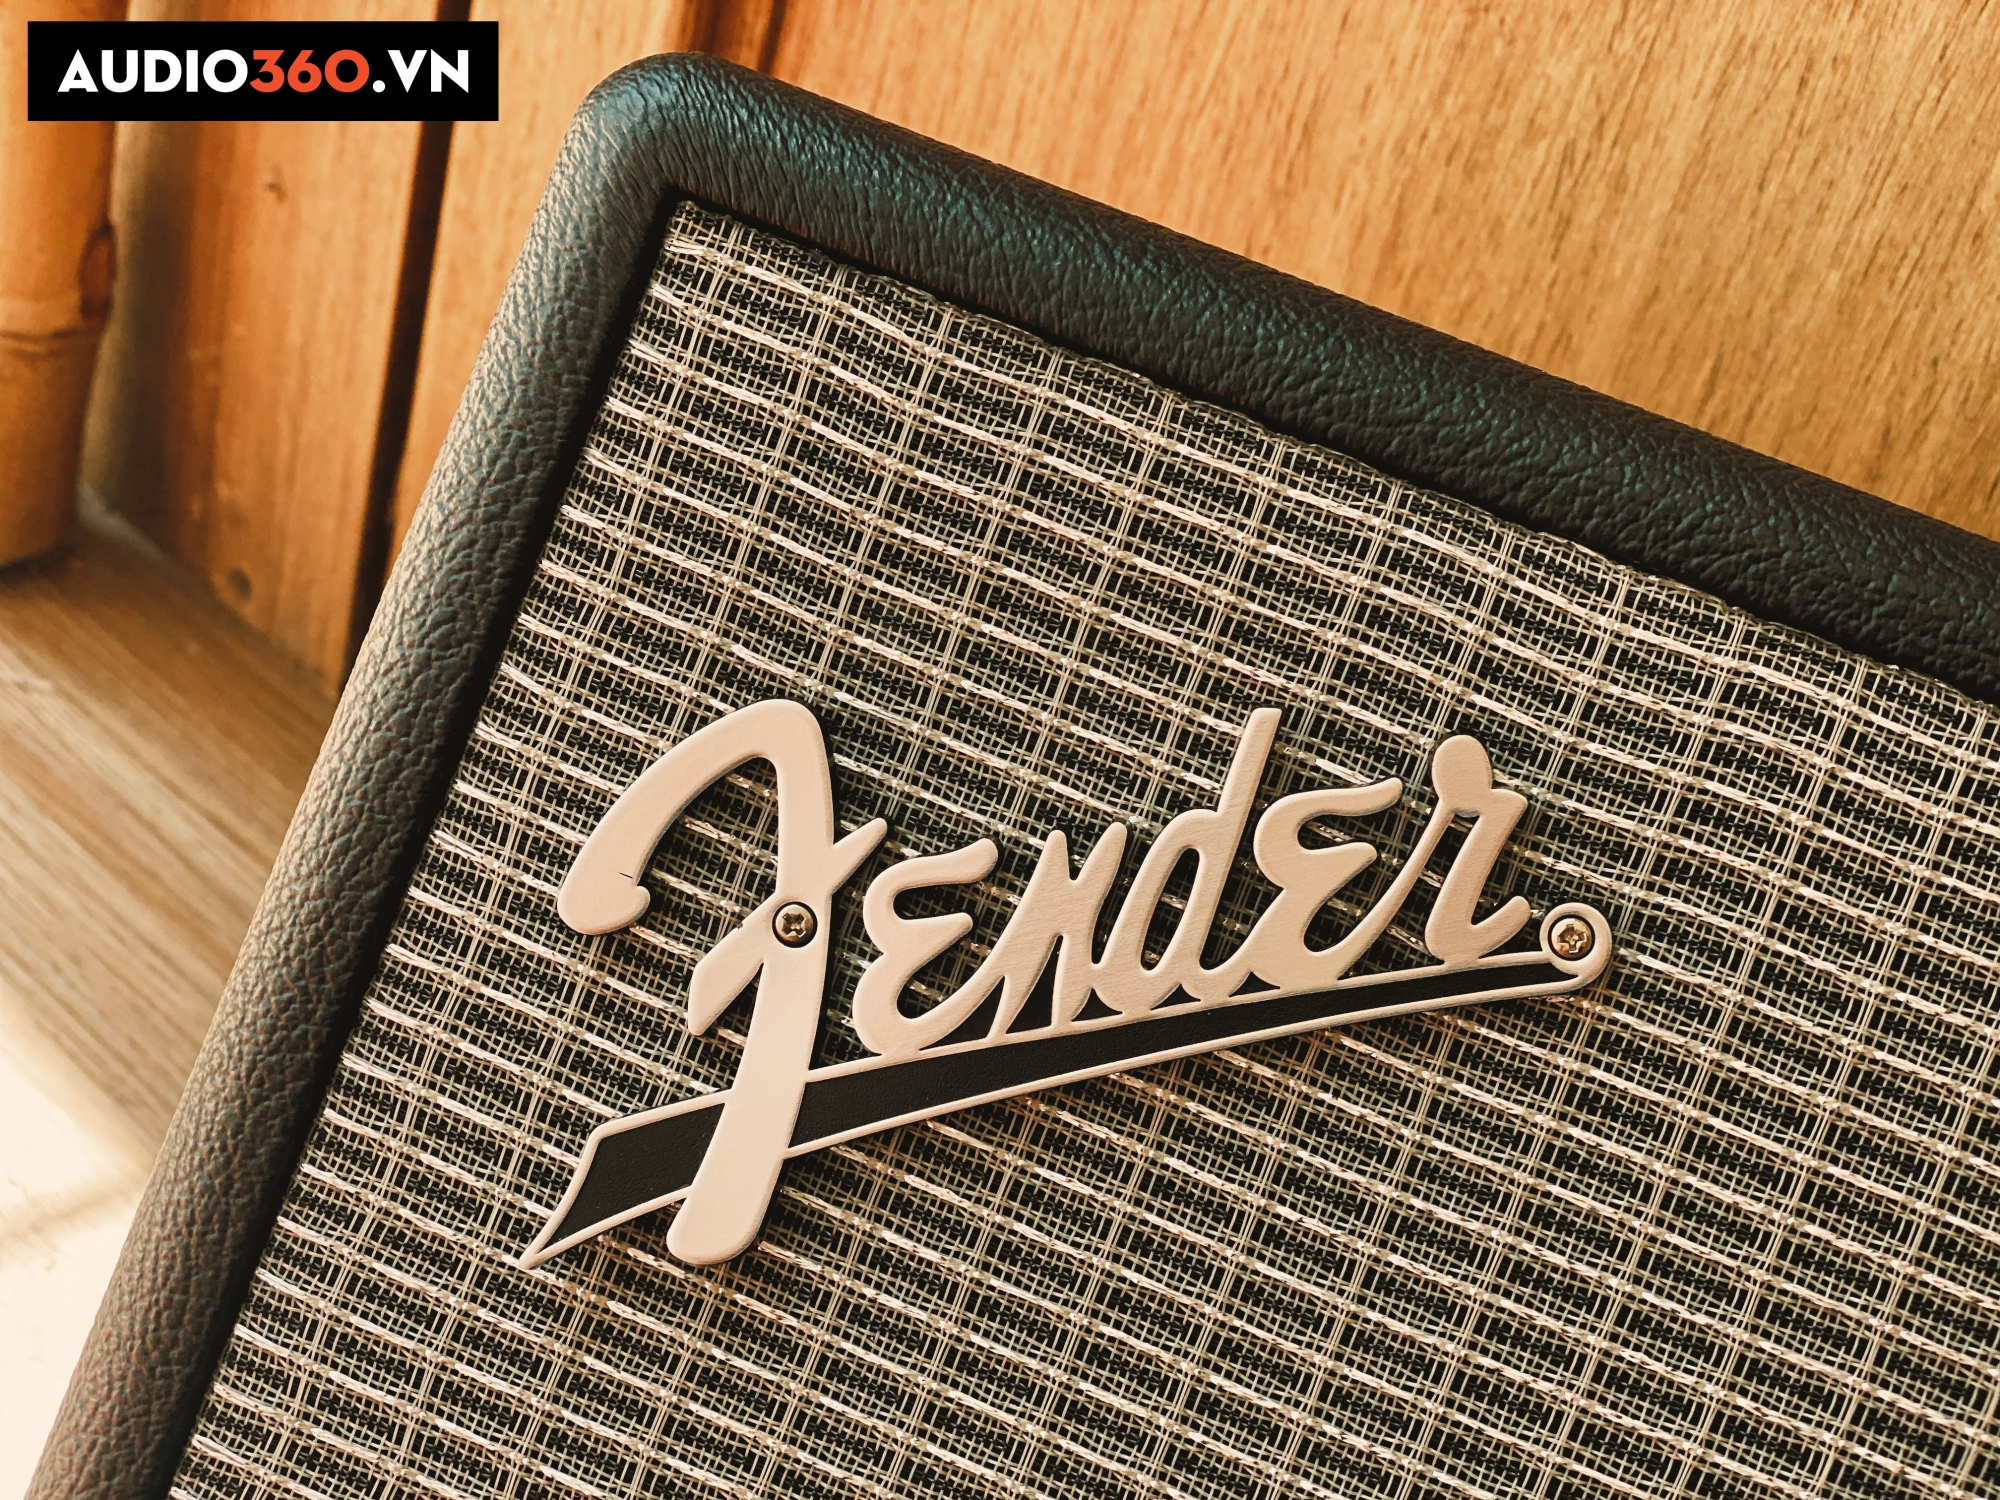 Fender là một trong những thương hiệu thiết bị âm thanh chuyên nghiệp chiều lòng đồng âm thế giới.